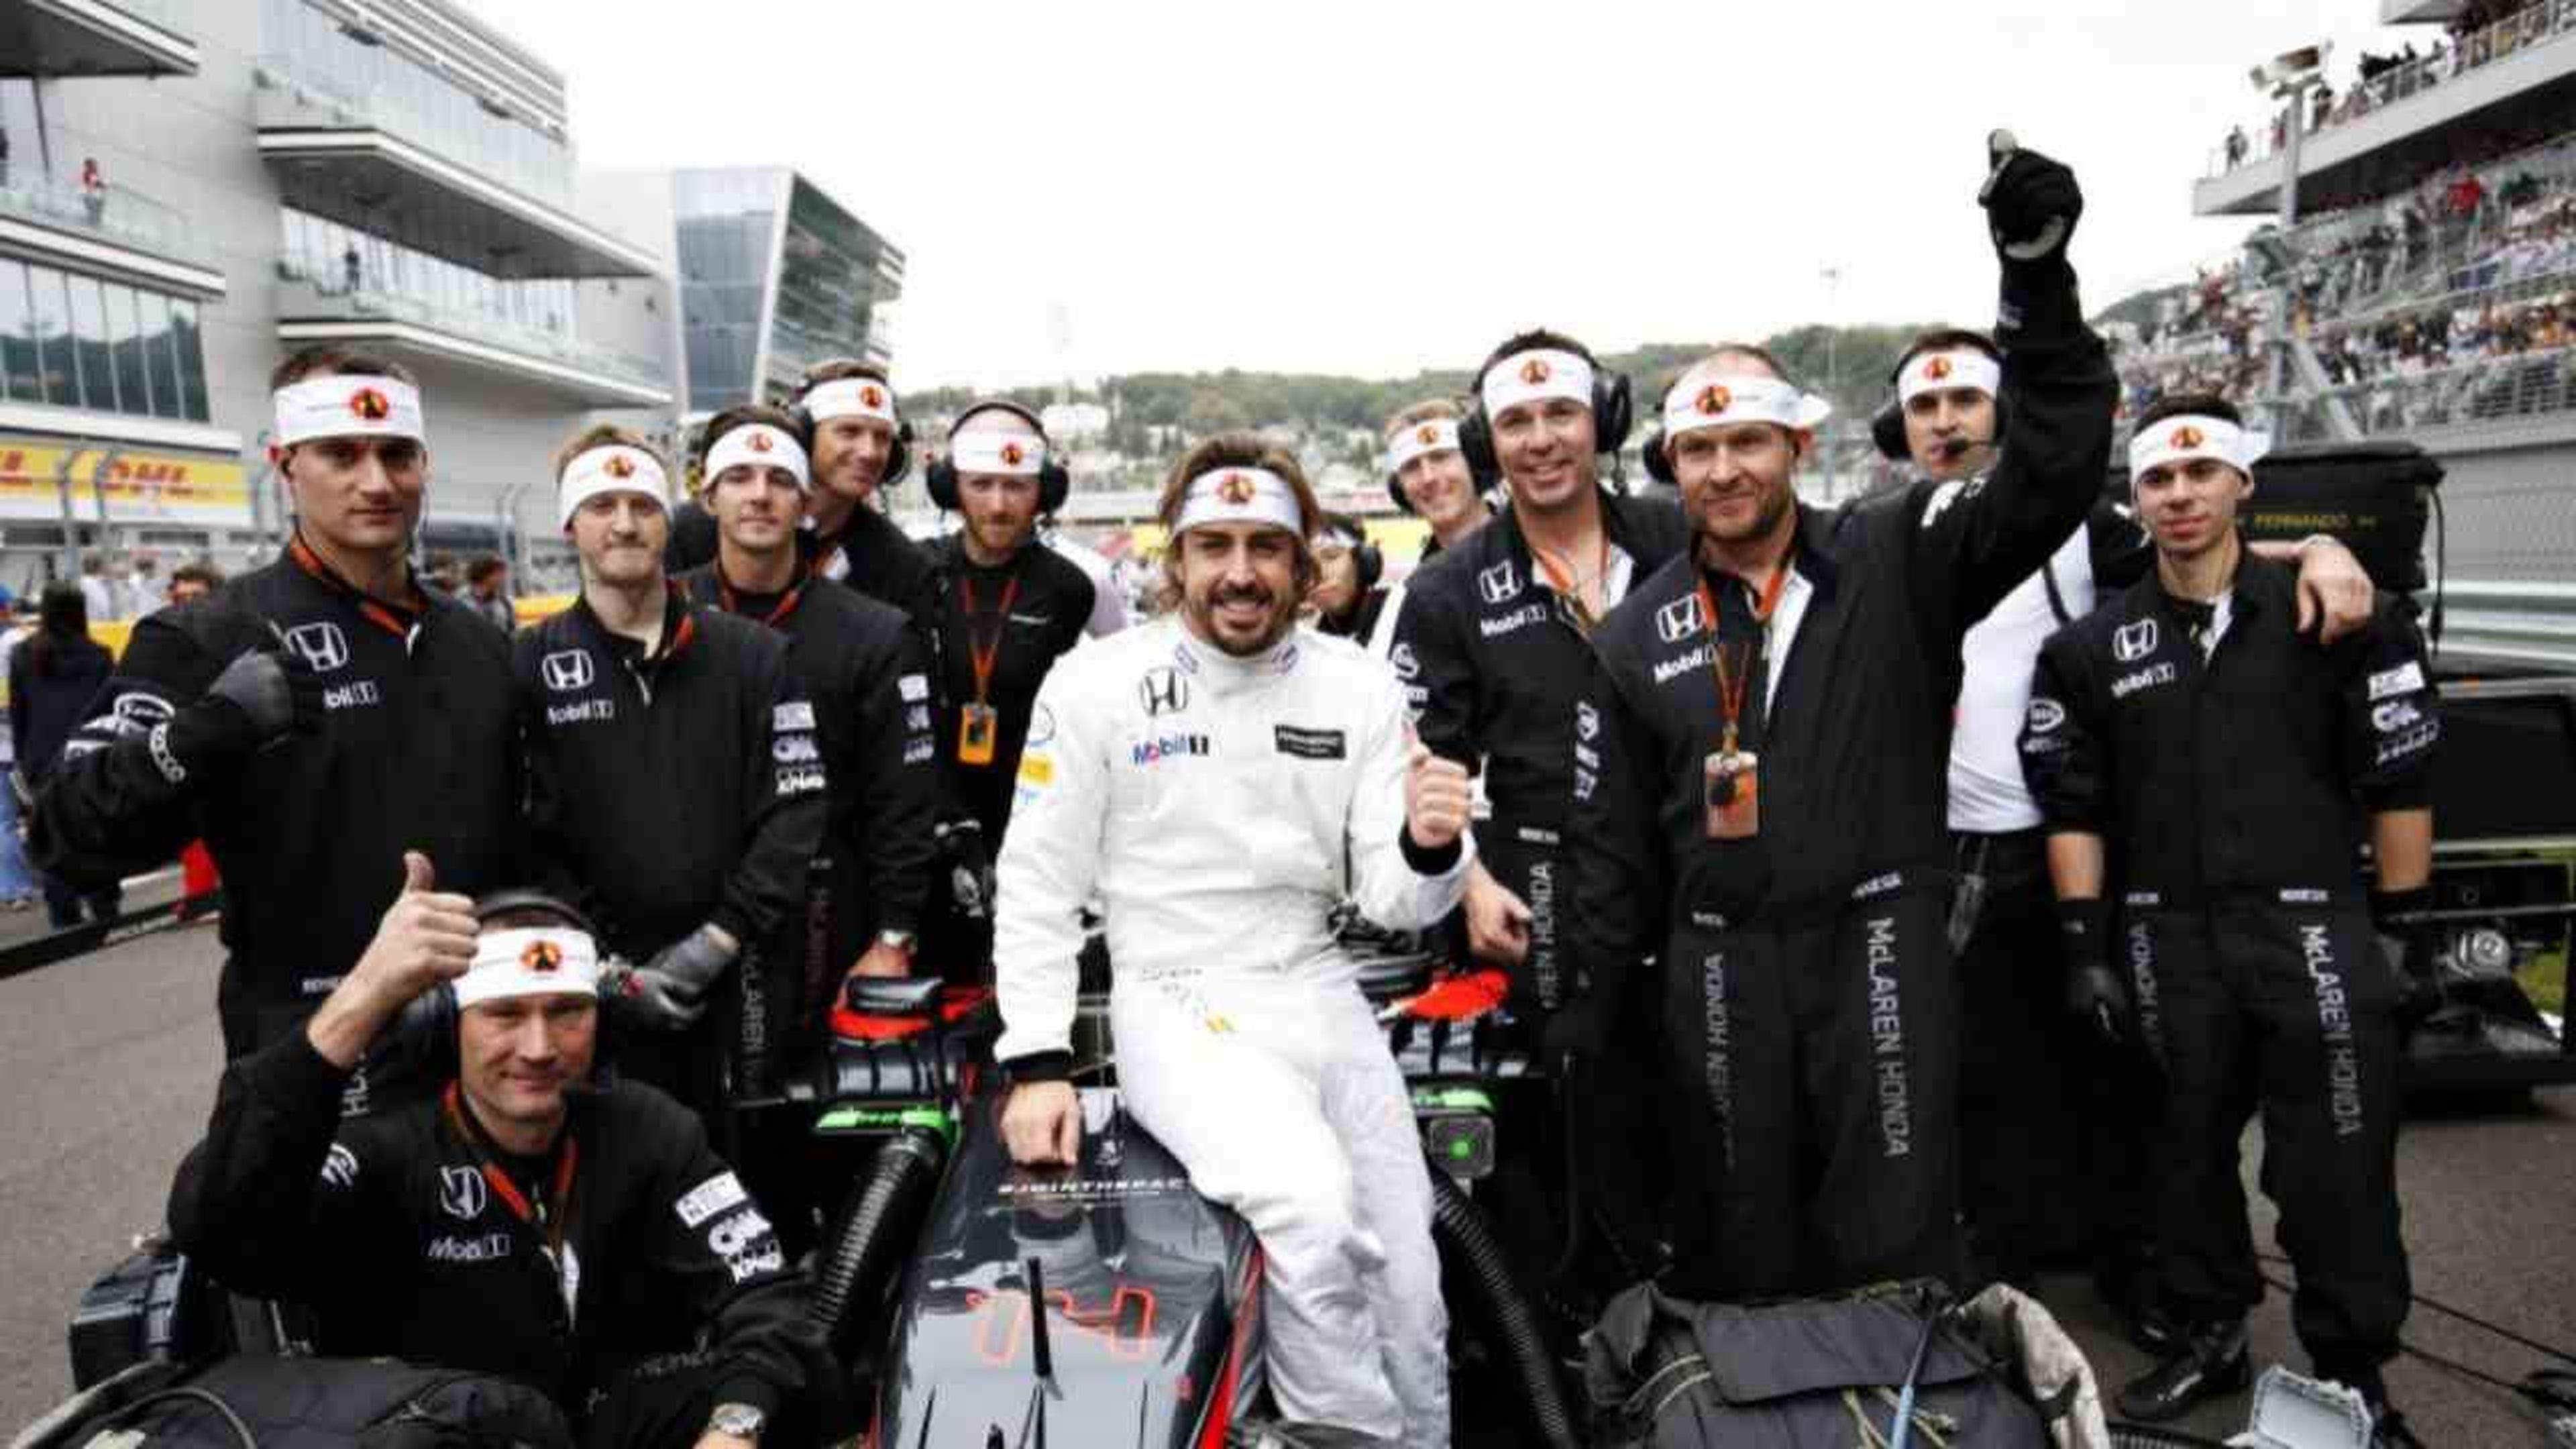 Mono Original Fernando Alonso temporada 2006